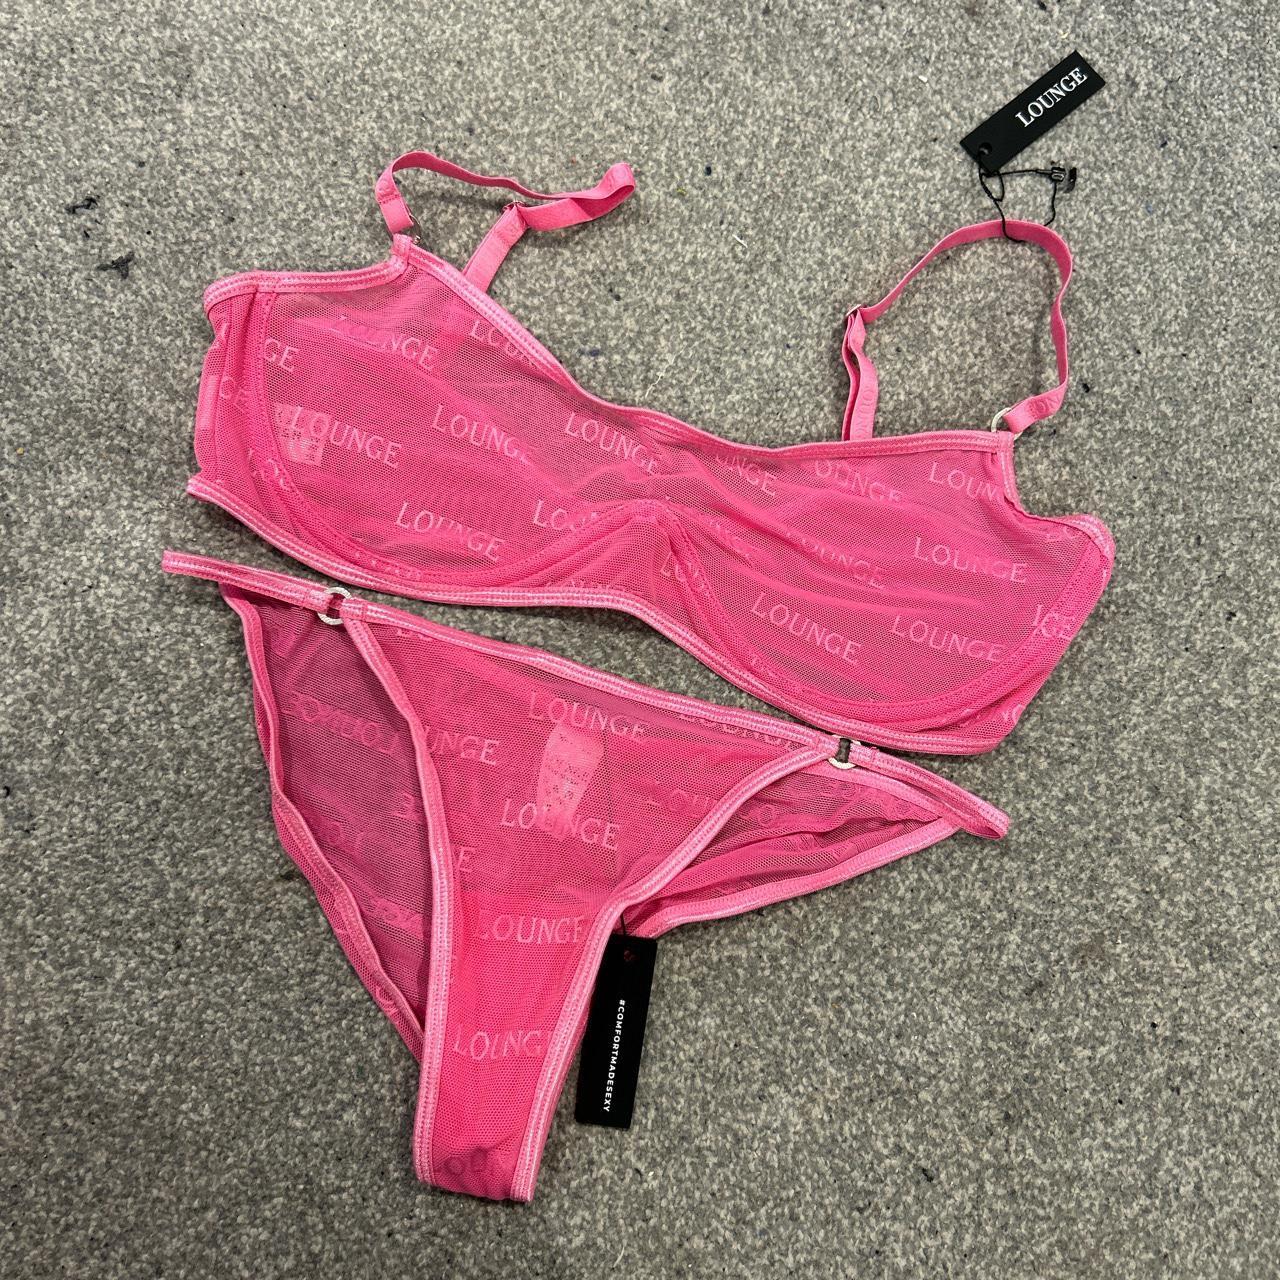 Lounge underwear bold pink mesh bra and briefs.